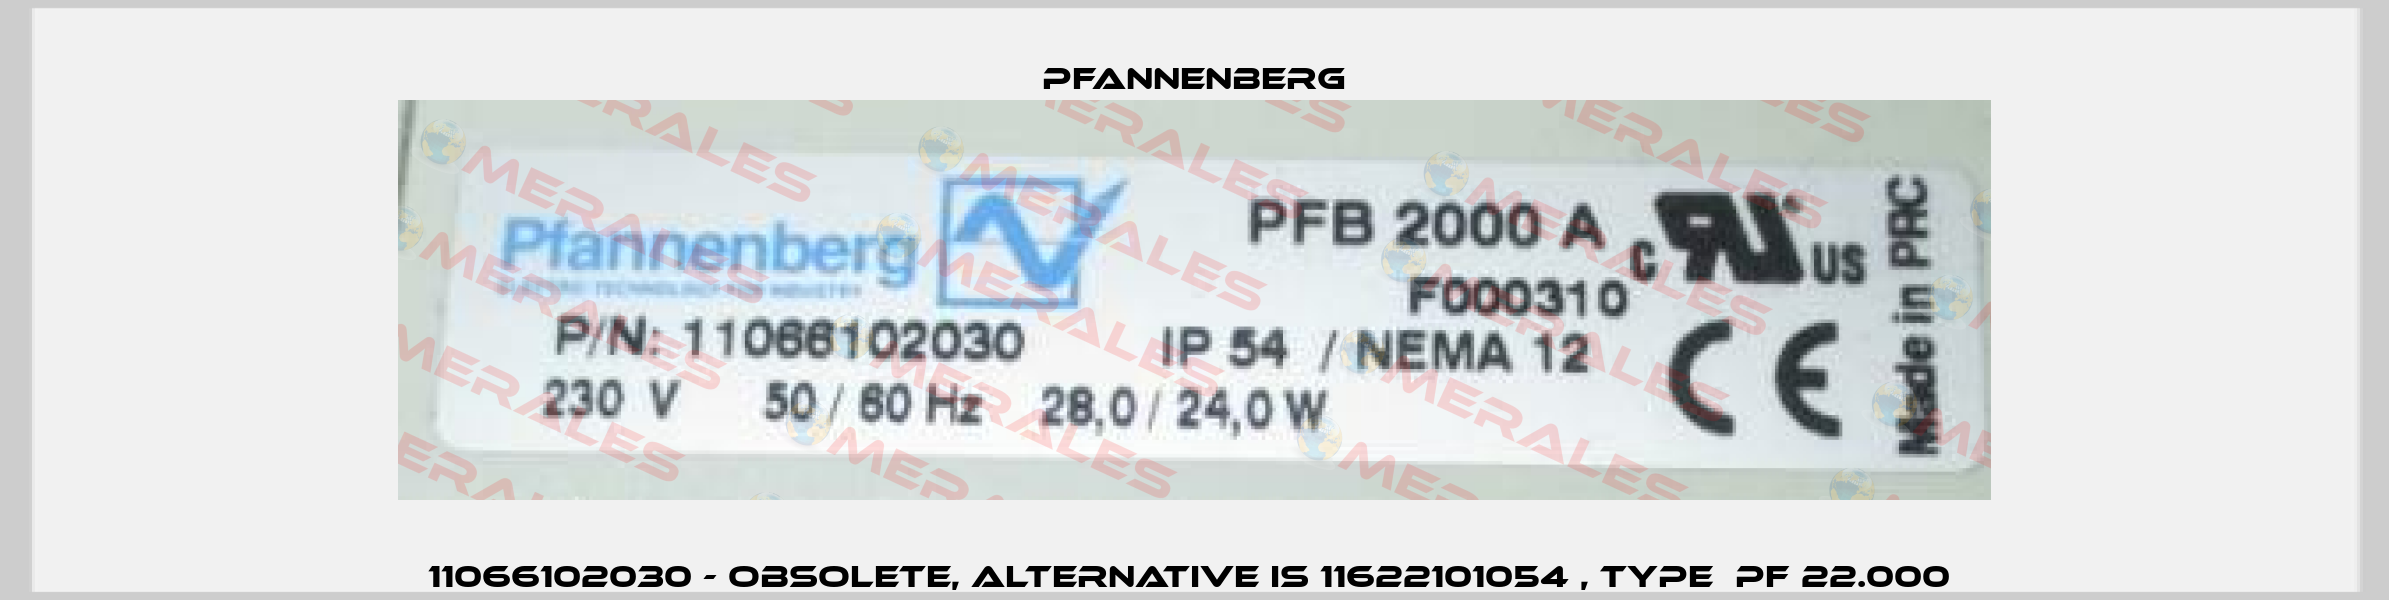 11066102030 - obsolete, alternative is 11622101054 , type  PF 22.000  Pfannenberg